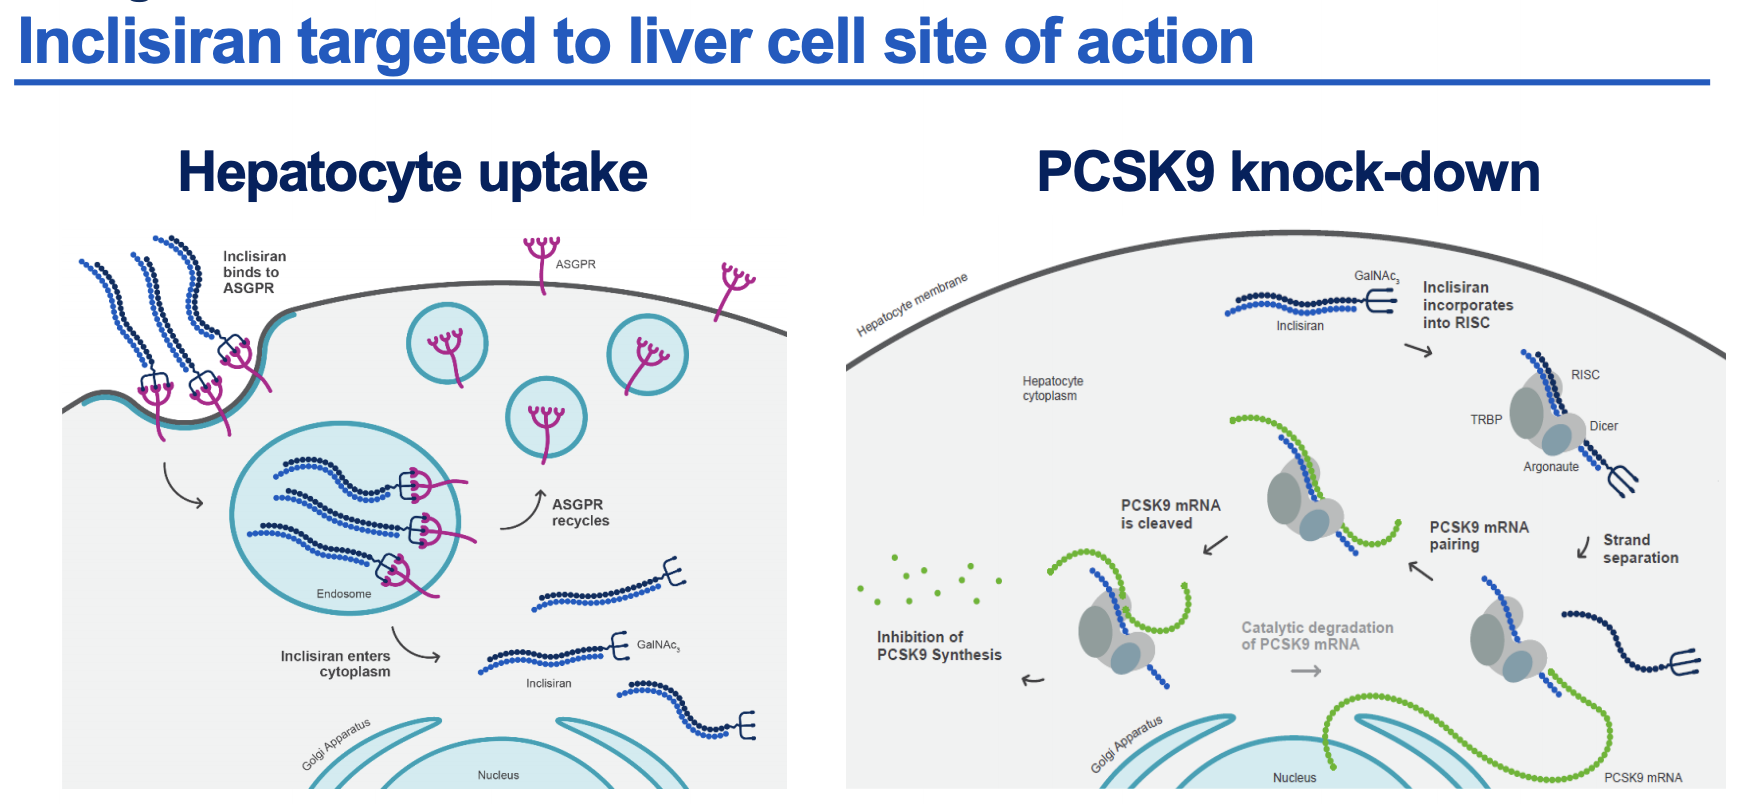 无论年龄和<font color="red">性别</font>，诺华靶向PCSK9的siRNA疗法均可在17个月内持续有效降低LDL-C